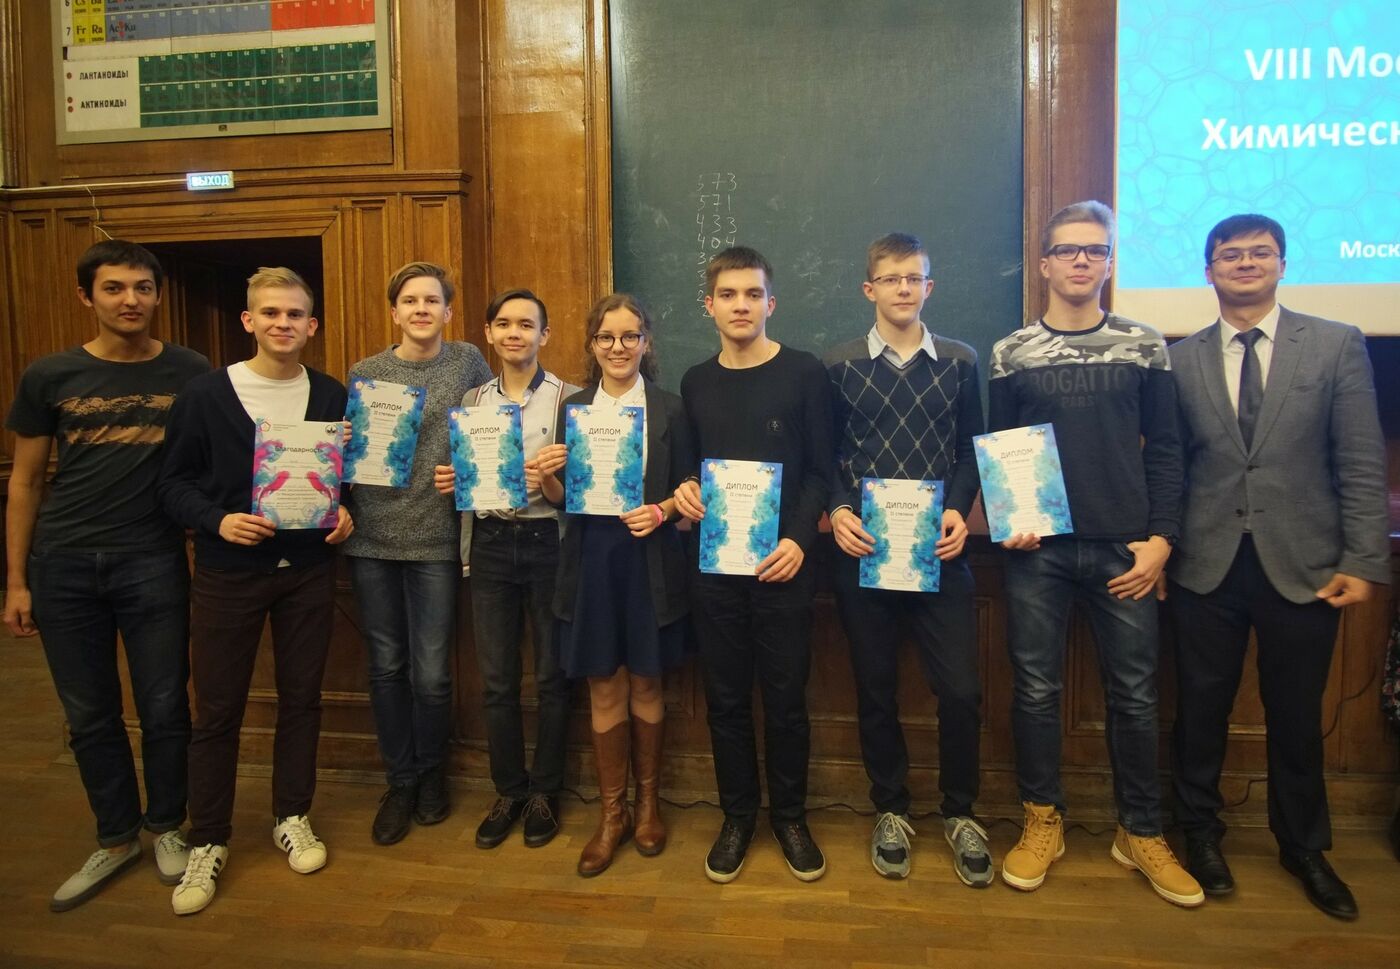 Команда из СУНЦ МГУ заняла второе место на VIII Московском химическом турнире